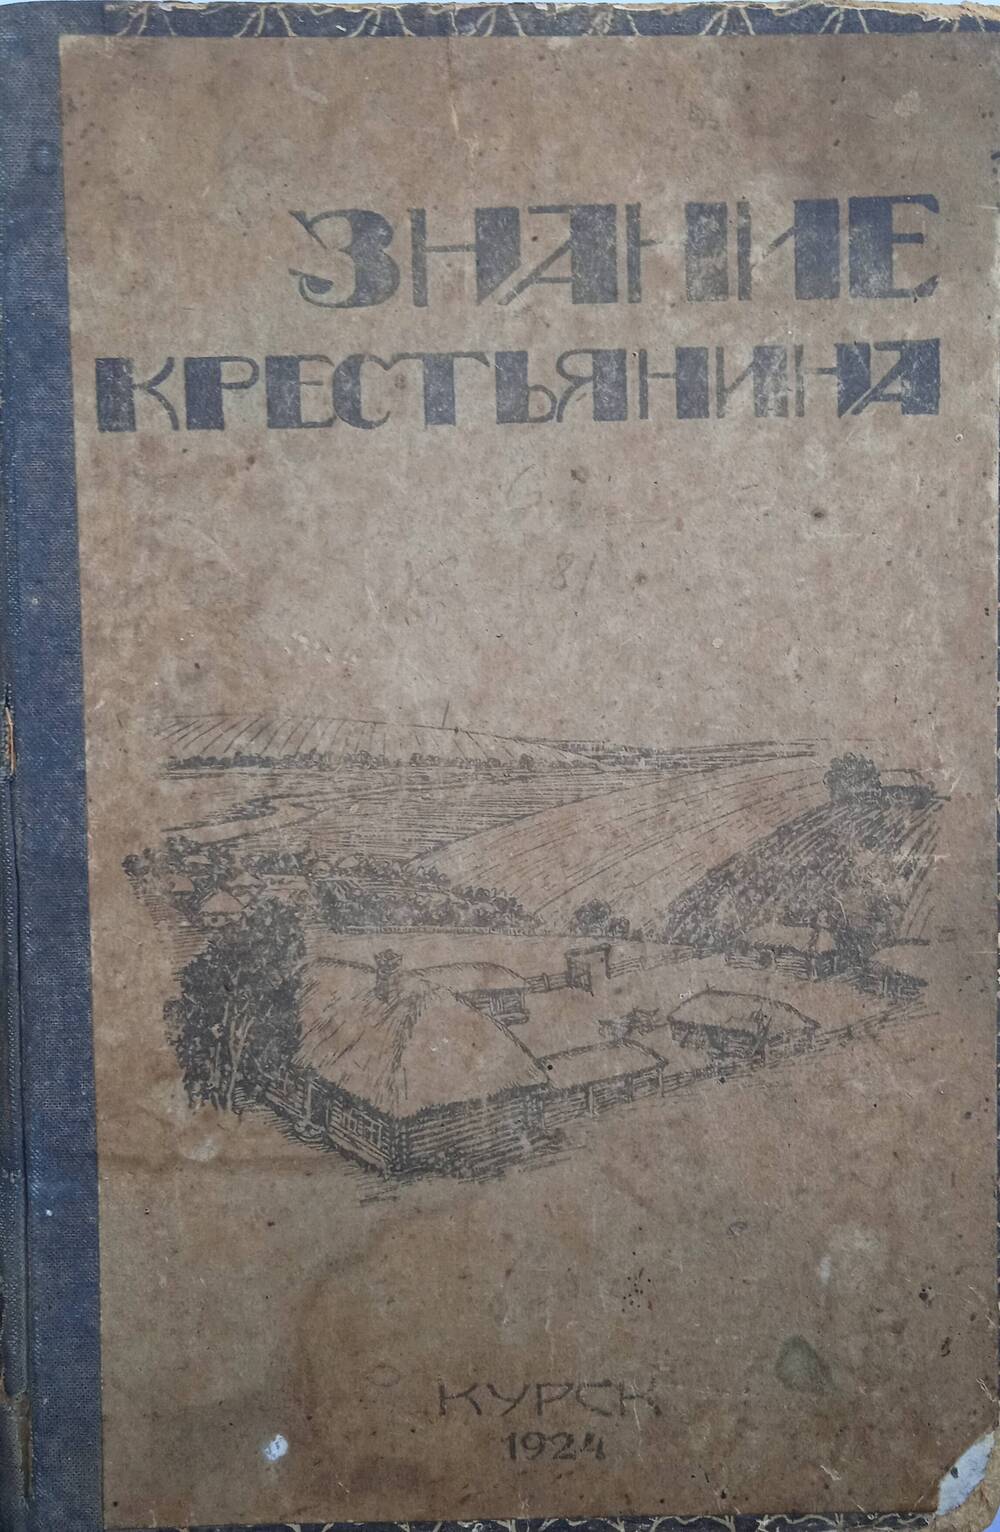 Книга «Знание крестьянина» - сборник для крестьян по вопросам политики, сельского хозяйства и законоположений.